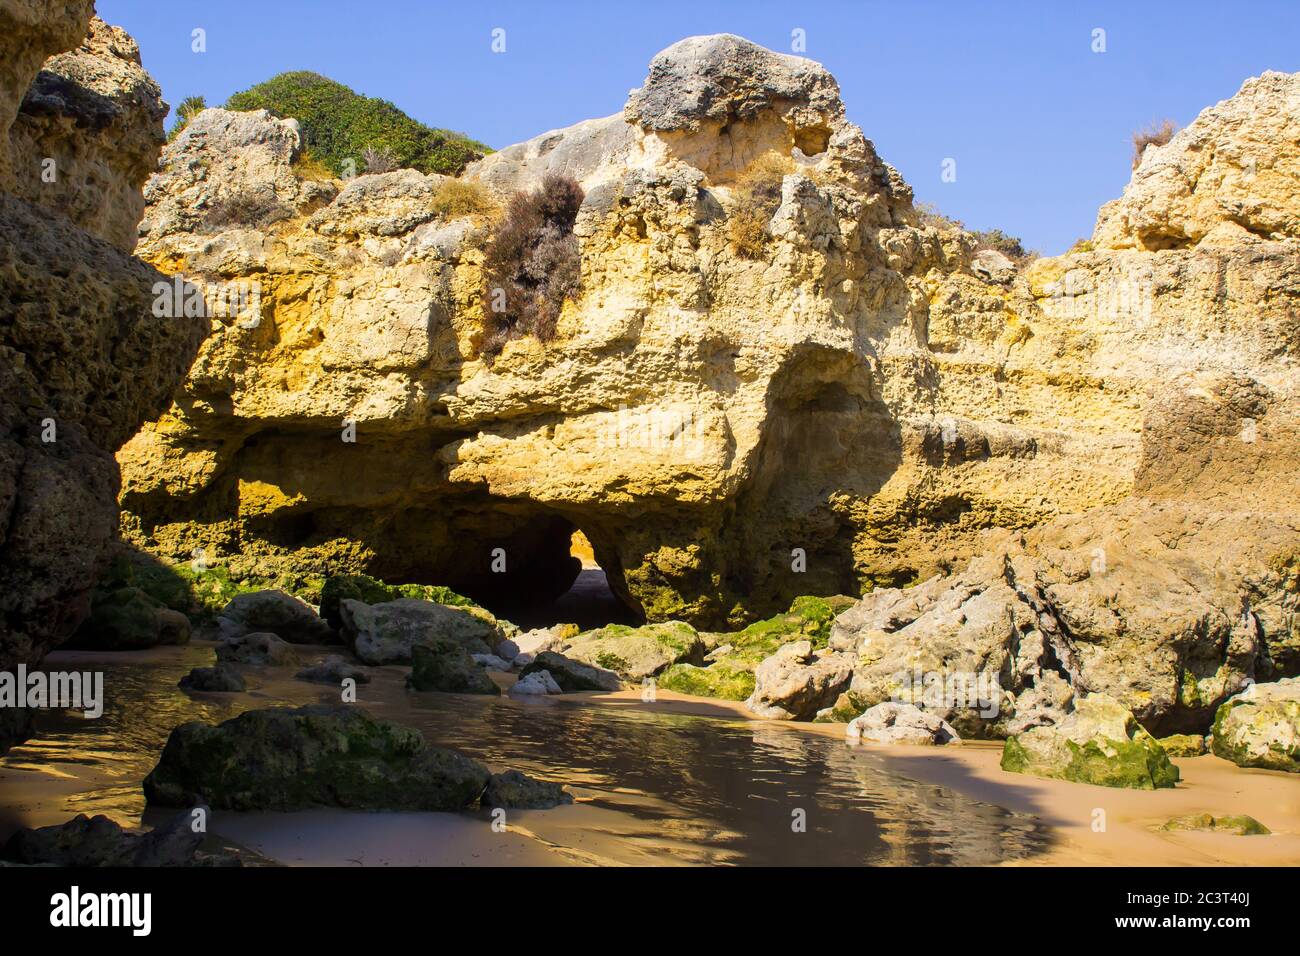 Eine einsame Bucht entlang des Strandes Oura Praia an der Algarve Portugal in der Nähe von Albuferia, die verwitterte Felsen und Winderosion zeigt. Stockfoto